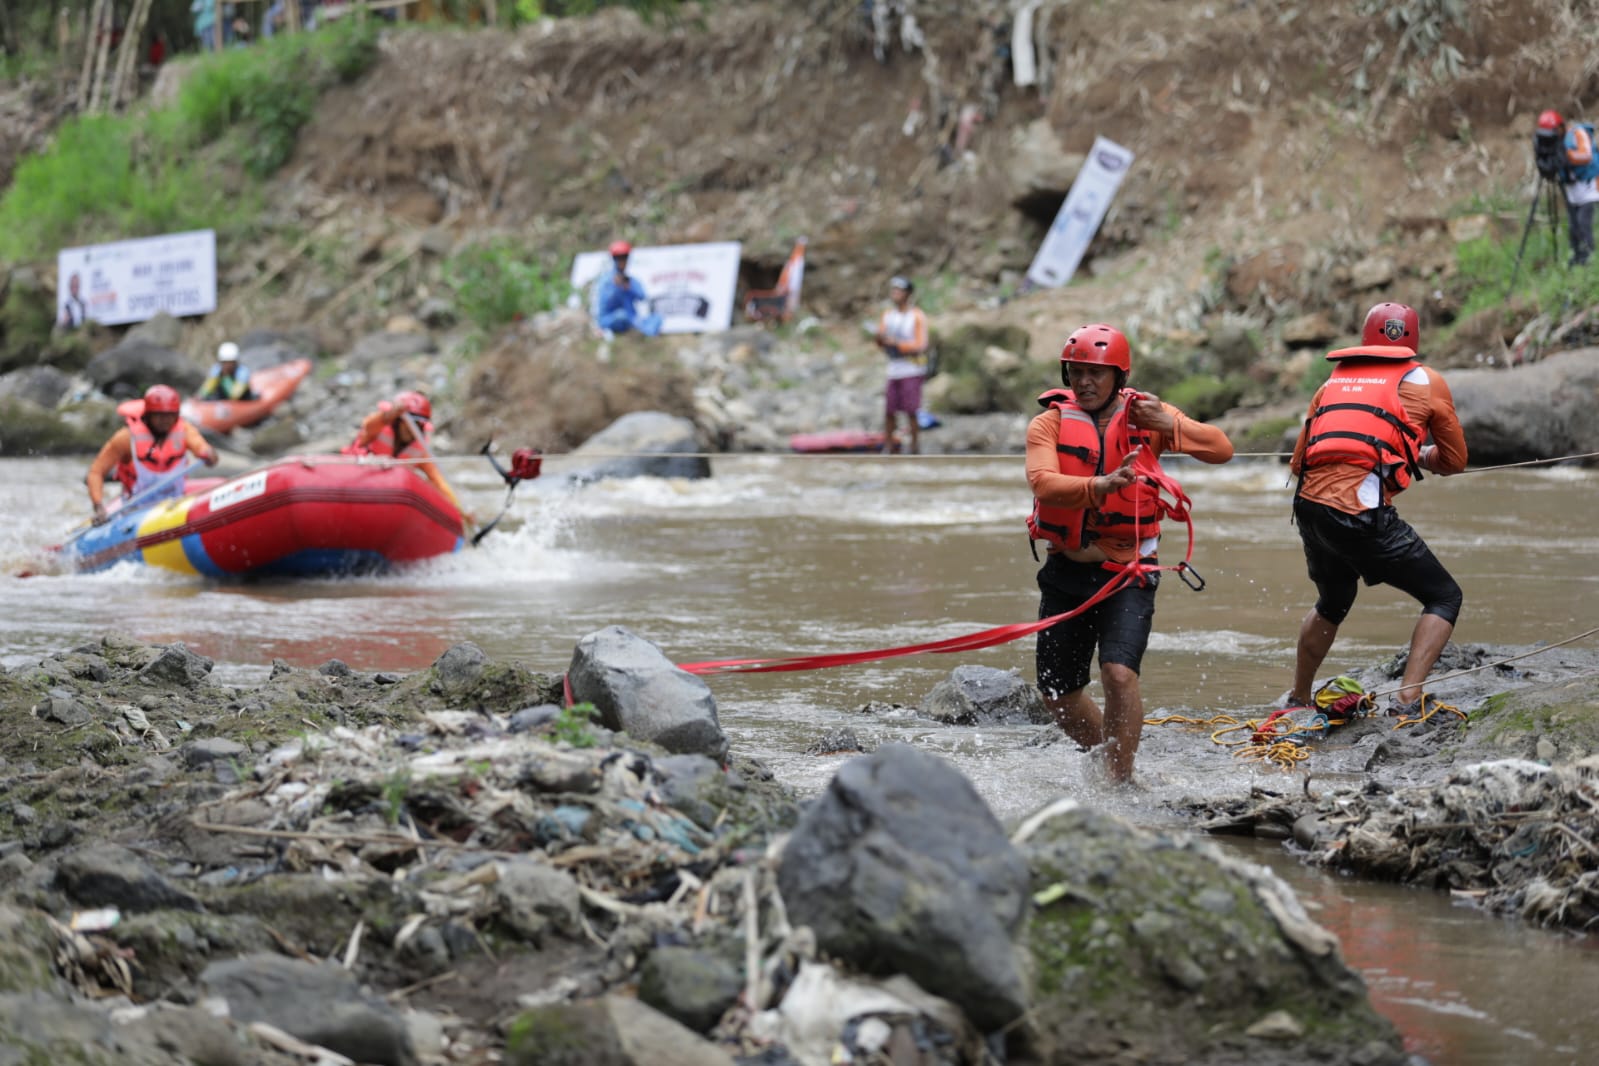 ratusan warga yang berkumpul disekitar lokasi kompetisi JQR River Rescue Challenge (JRRC) Piala Gubernur Jawa Barat 2022